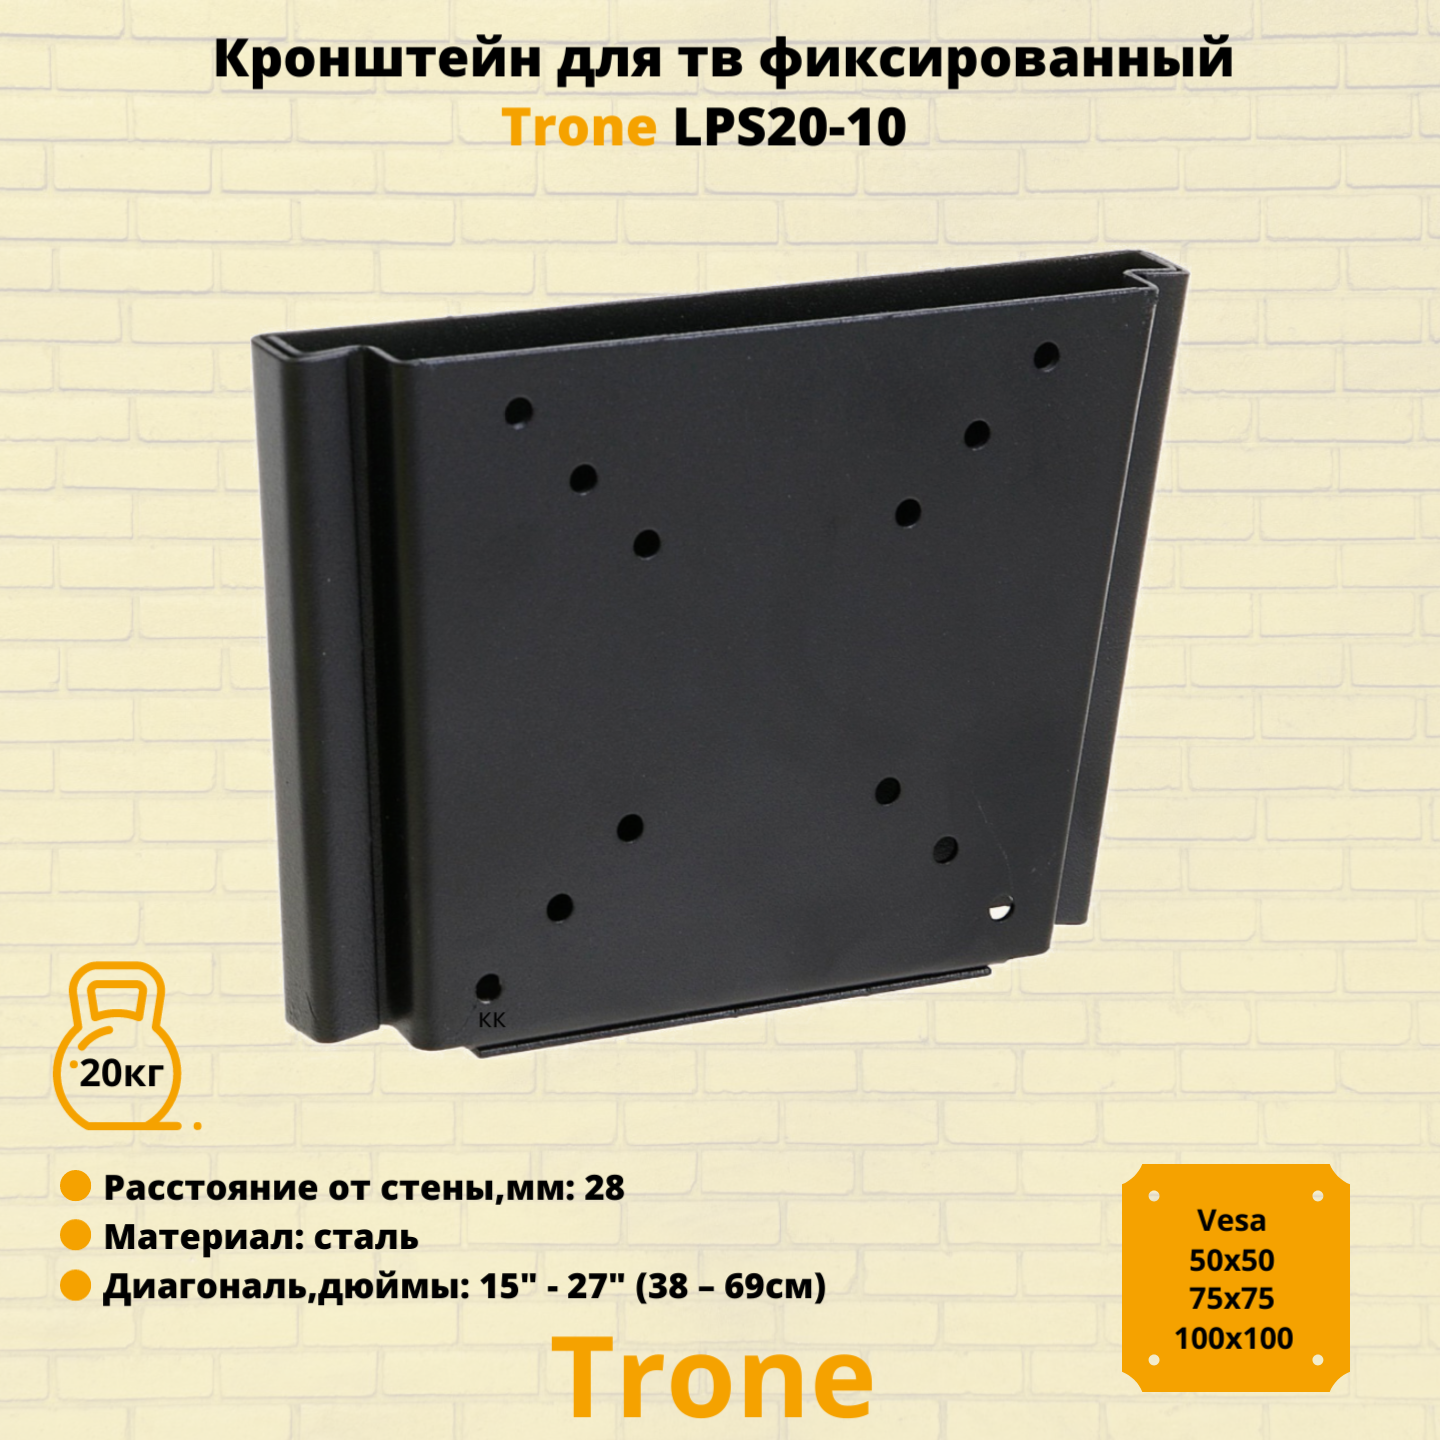 Кронштейн для телевизора на стену фиксированный с диагональю 15"-27" Trone LPS 20-10, черный